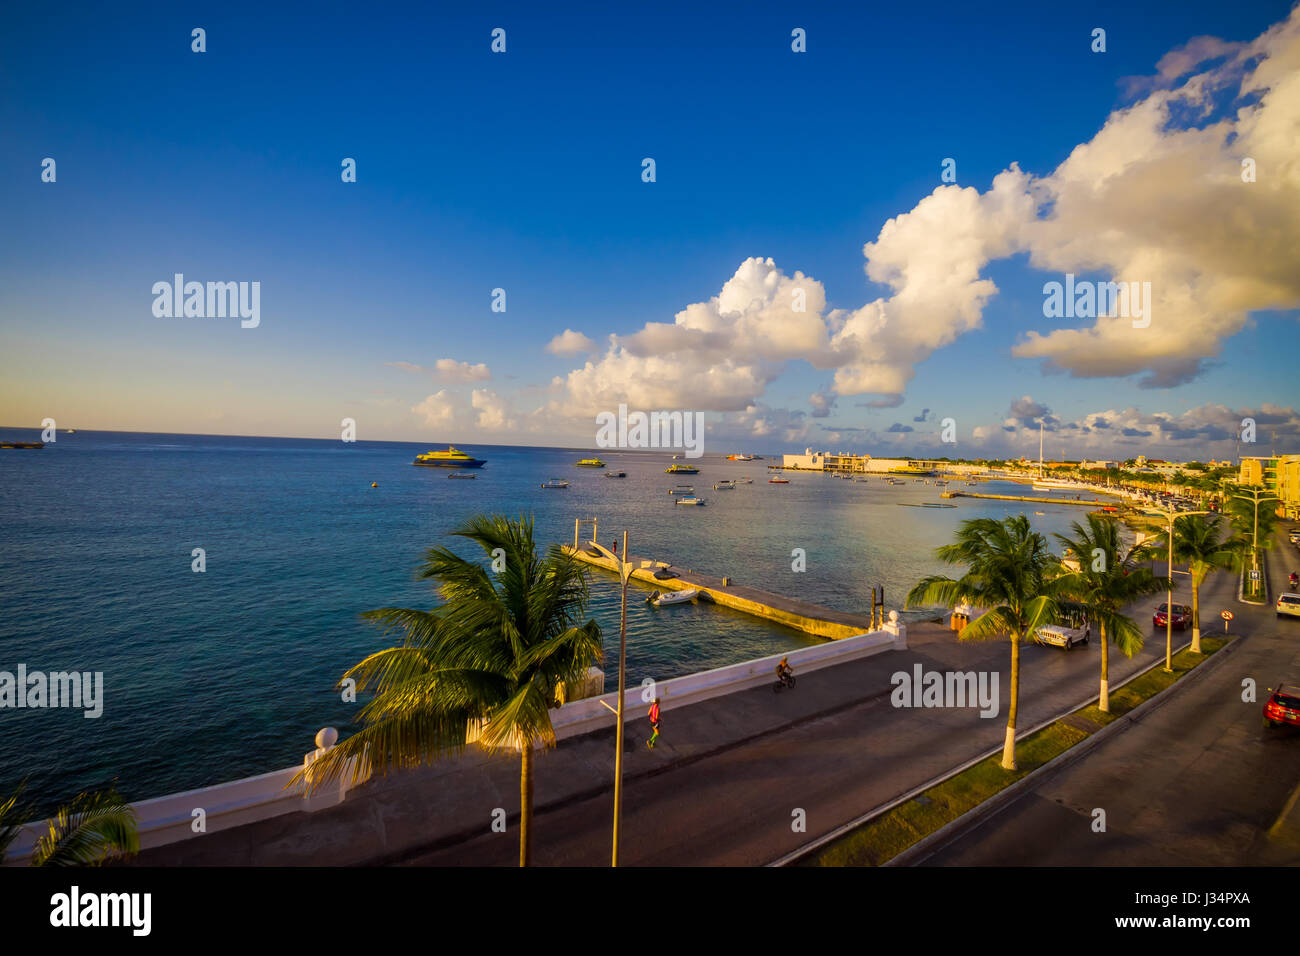 Il molo di Cozumen Isola, di solito la gente cammina intorno e godere la vista. Bel tramonto Foto Stock